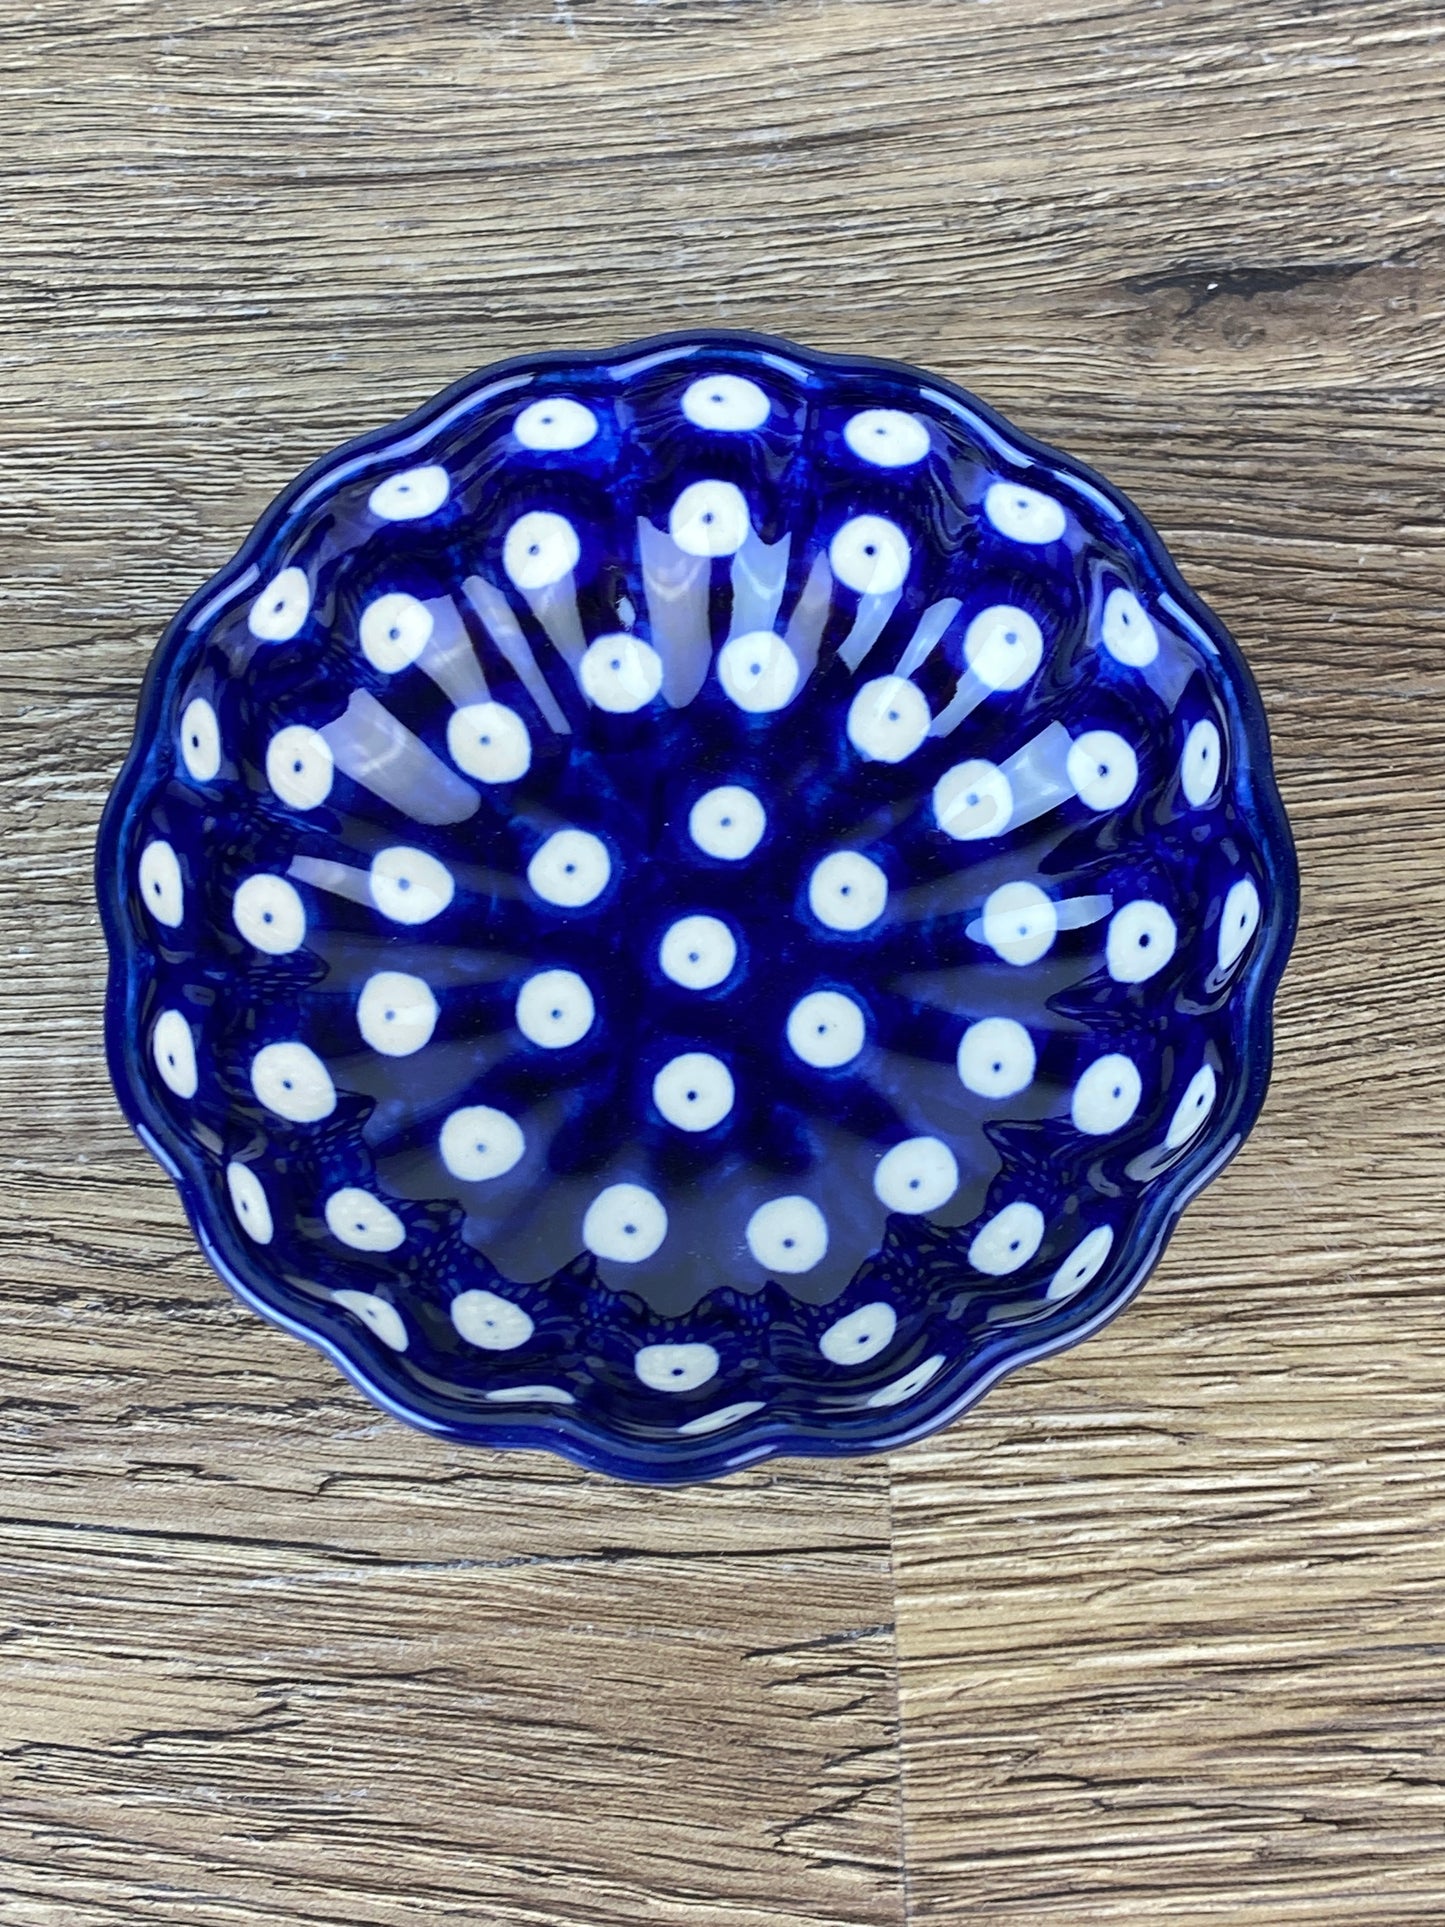 4.5" Scalloped Bowl - Shape 23 - Pattern 70a